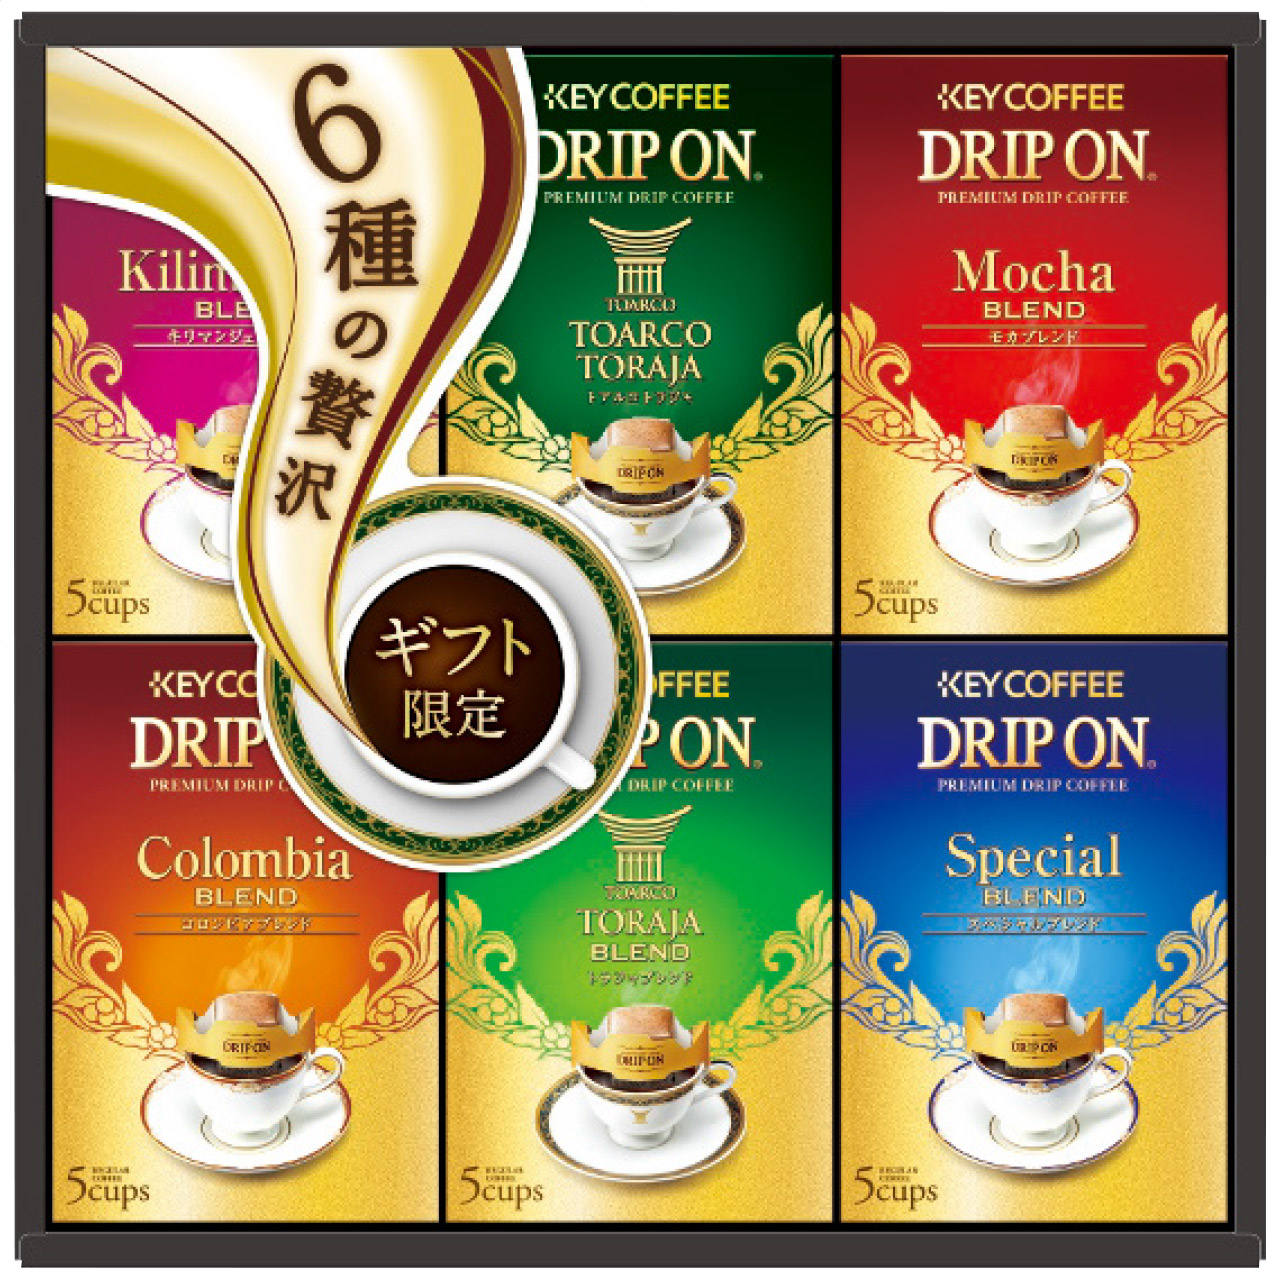 ドリップオン・レギュラーコーヒーギフト KDV-30M